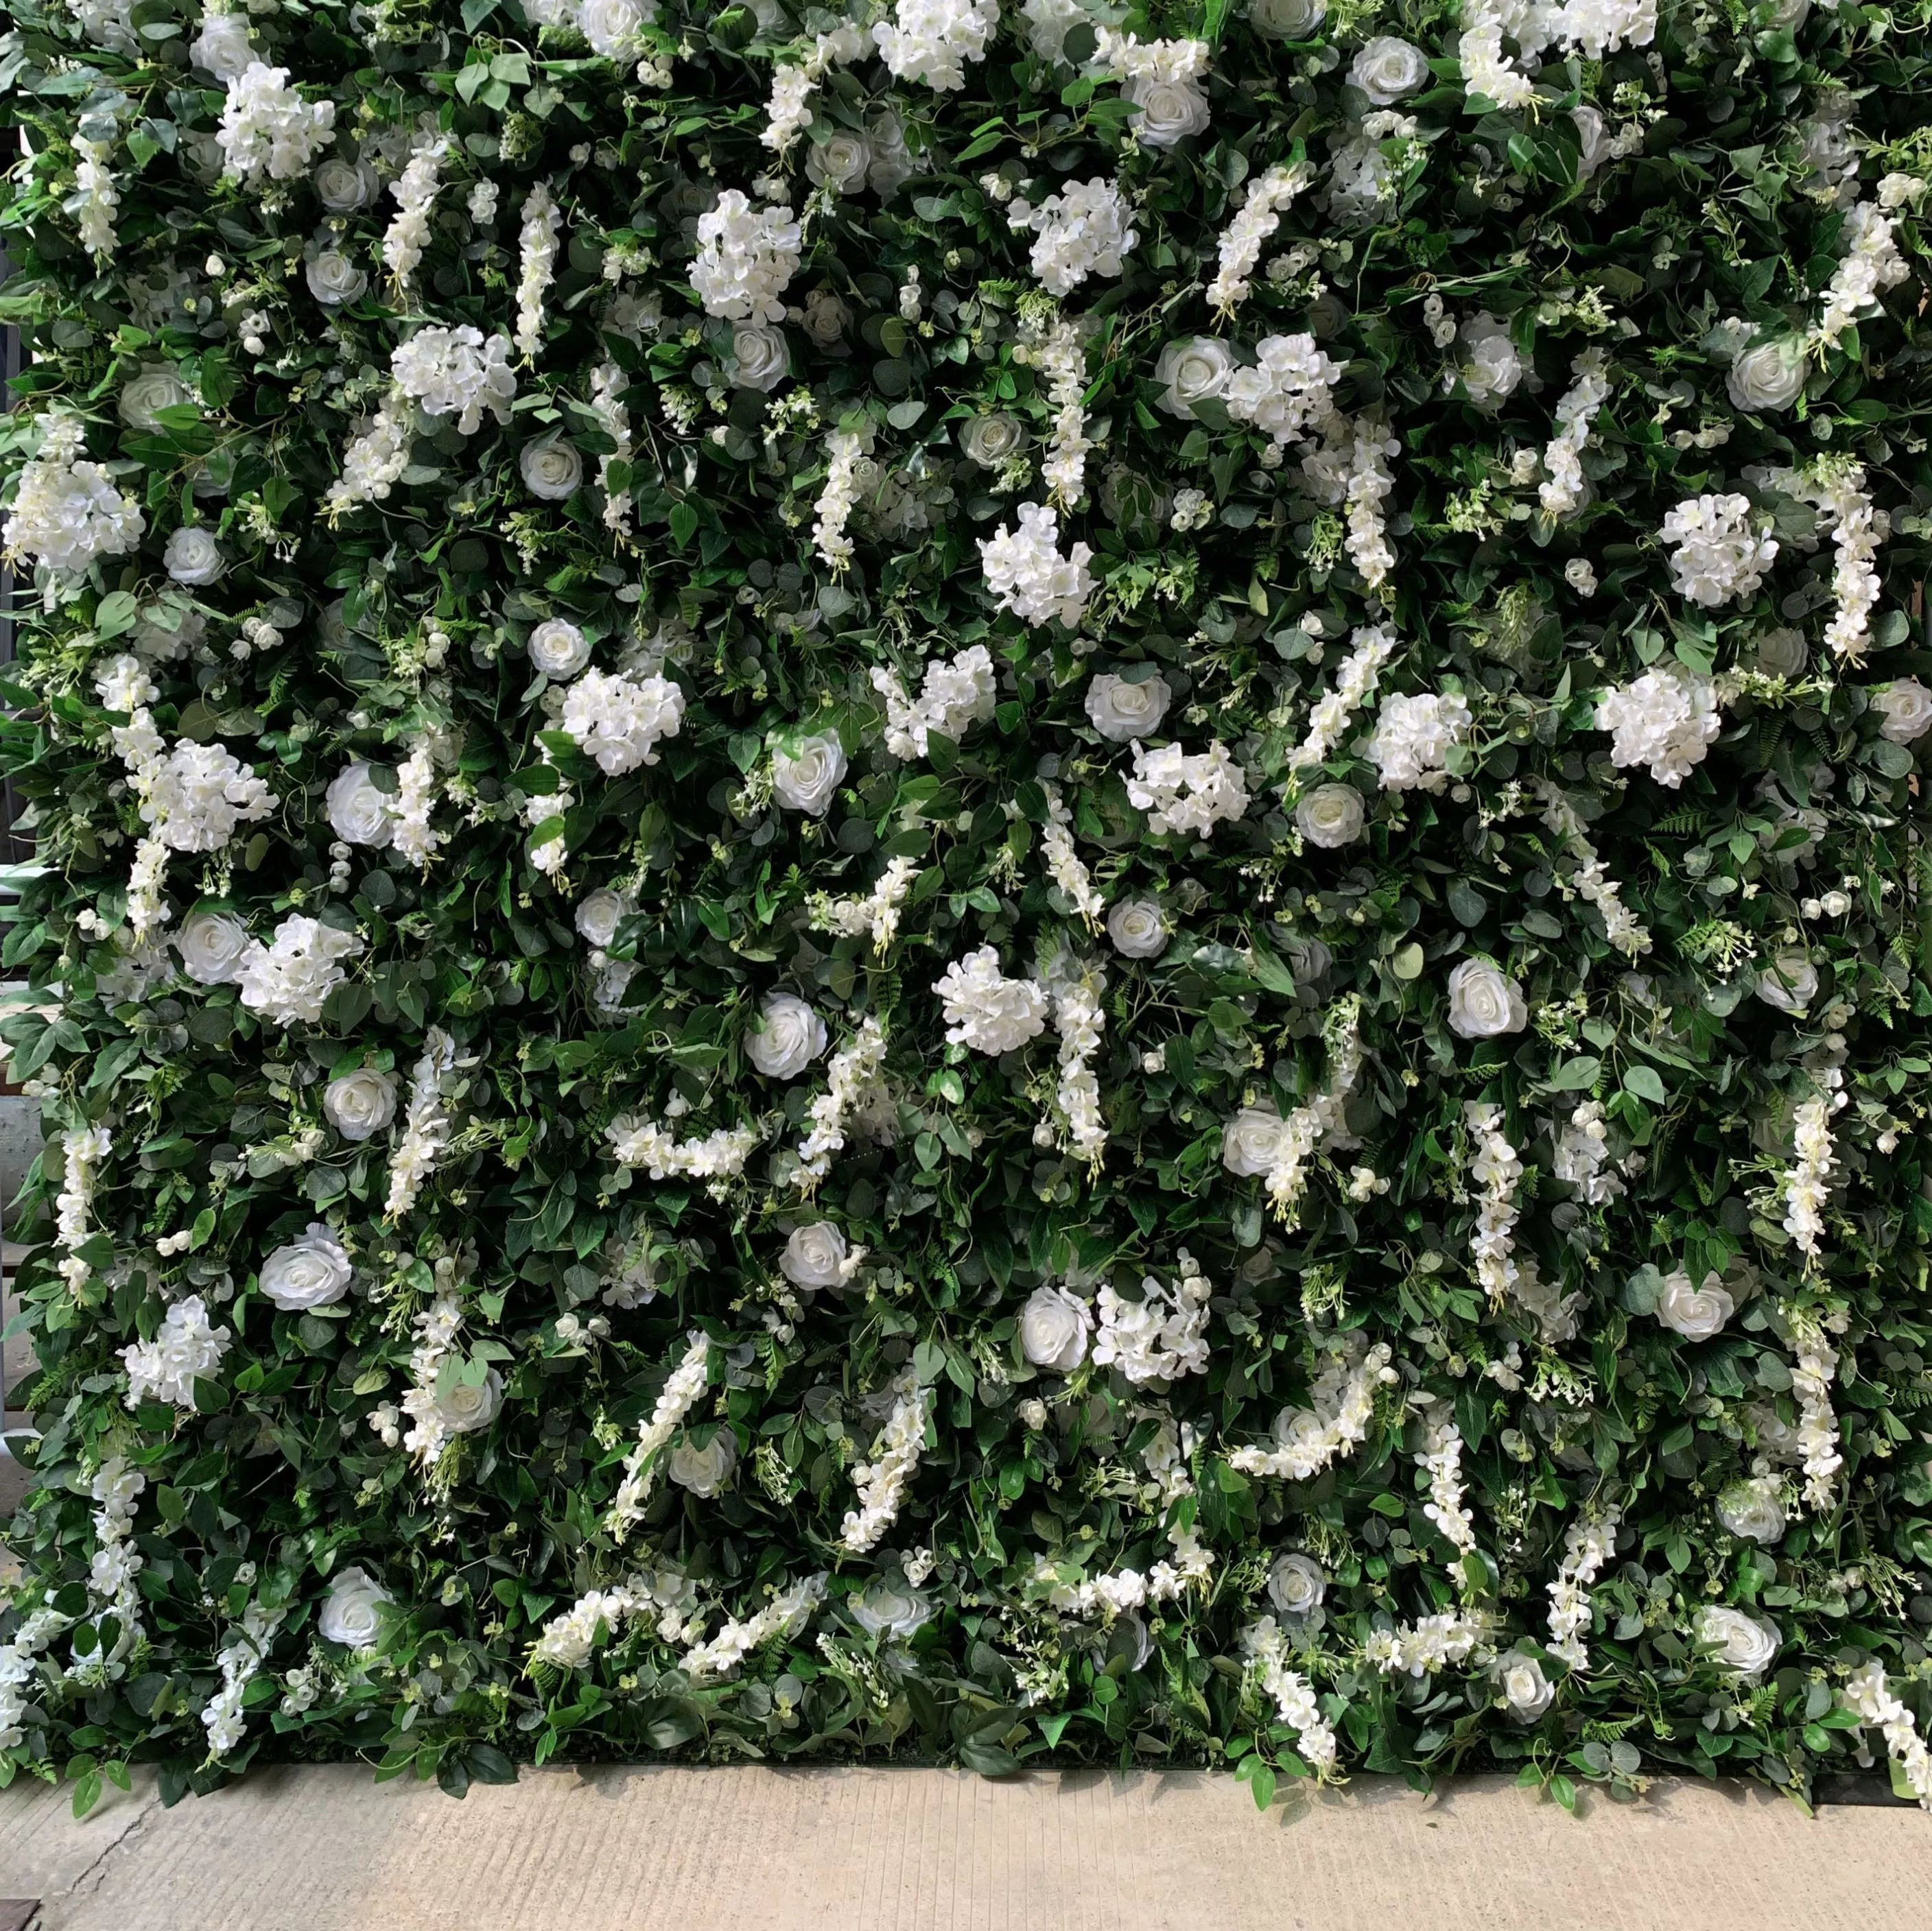 زهرة فالار تتدحرج من القماش الأبيض الصناعي وأوراق خضراء حية خلفية جدارية زهرية للزفاف ، ديكور حفلات زهور ، حدث